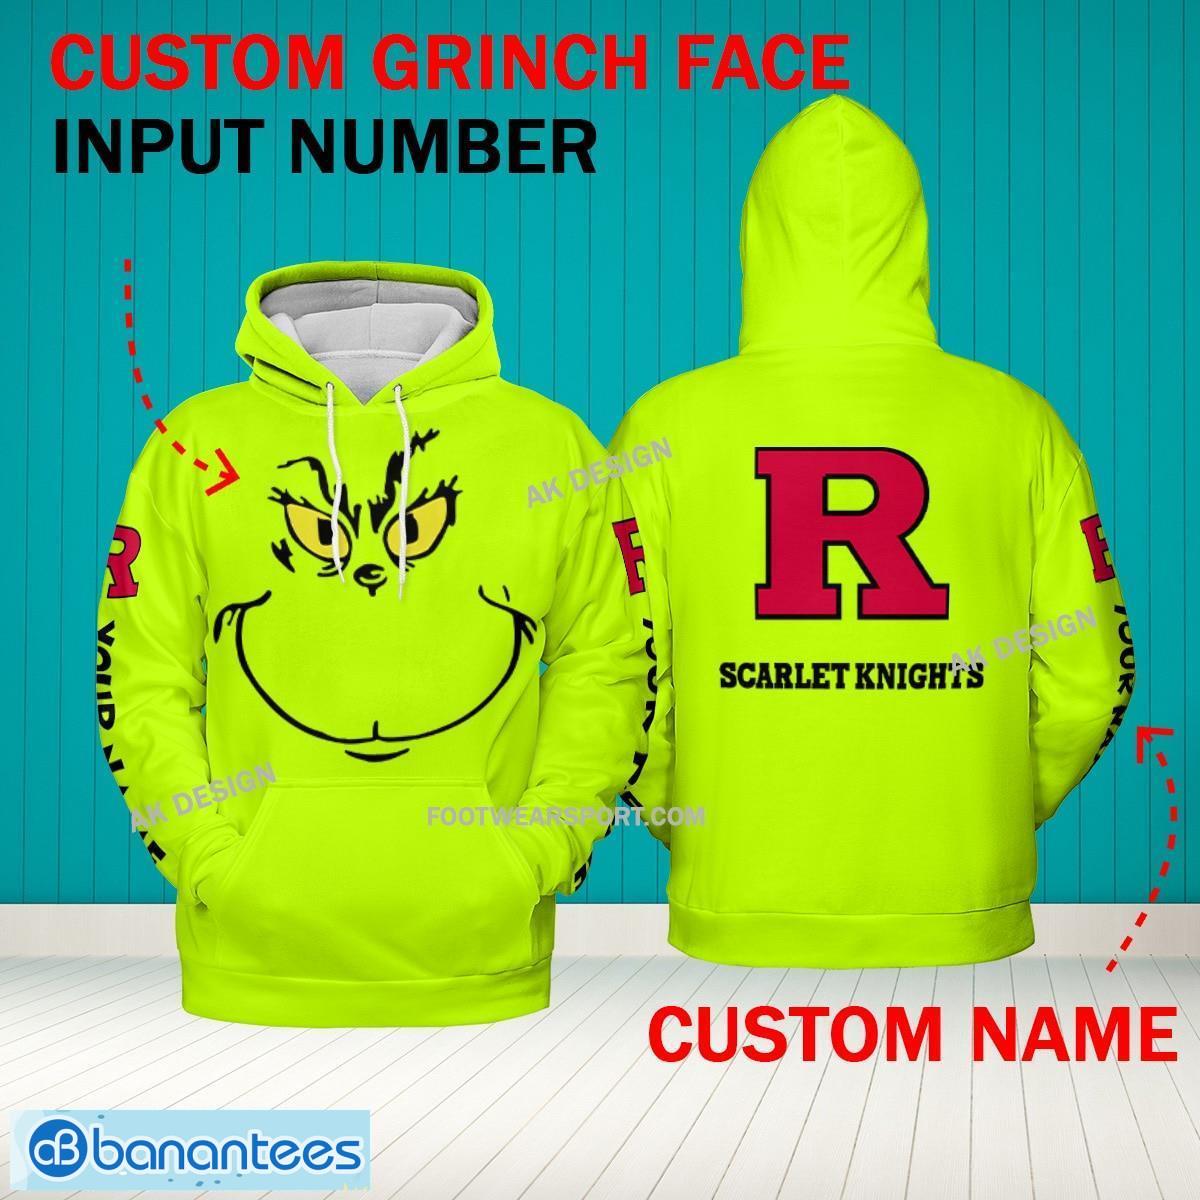 Grinch Face Rutgers Scarlet Knights 3D Hoodie, Zip Hoodie, Sweater Green AOP Custom Number And Name - Grinch Face NCAA Rutgers Scarlet Knights 3D Hoodie